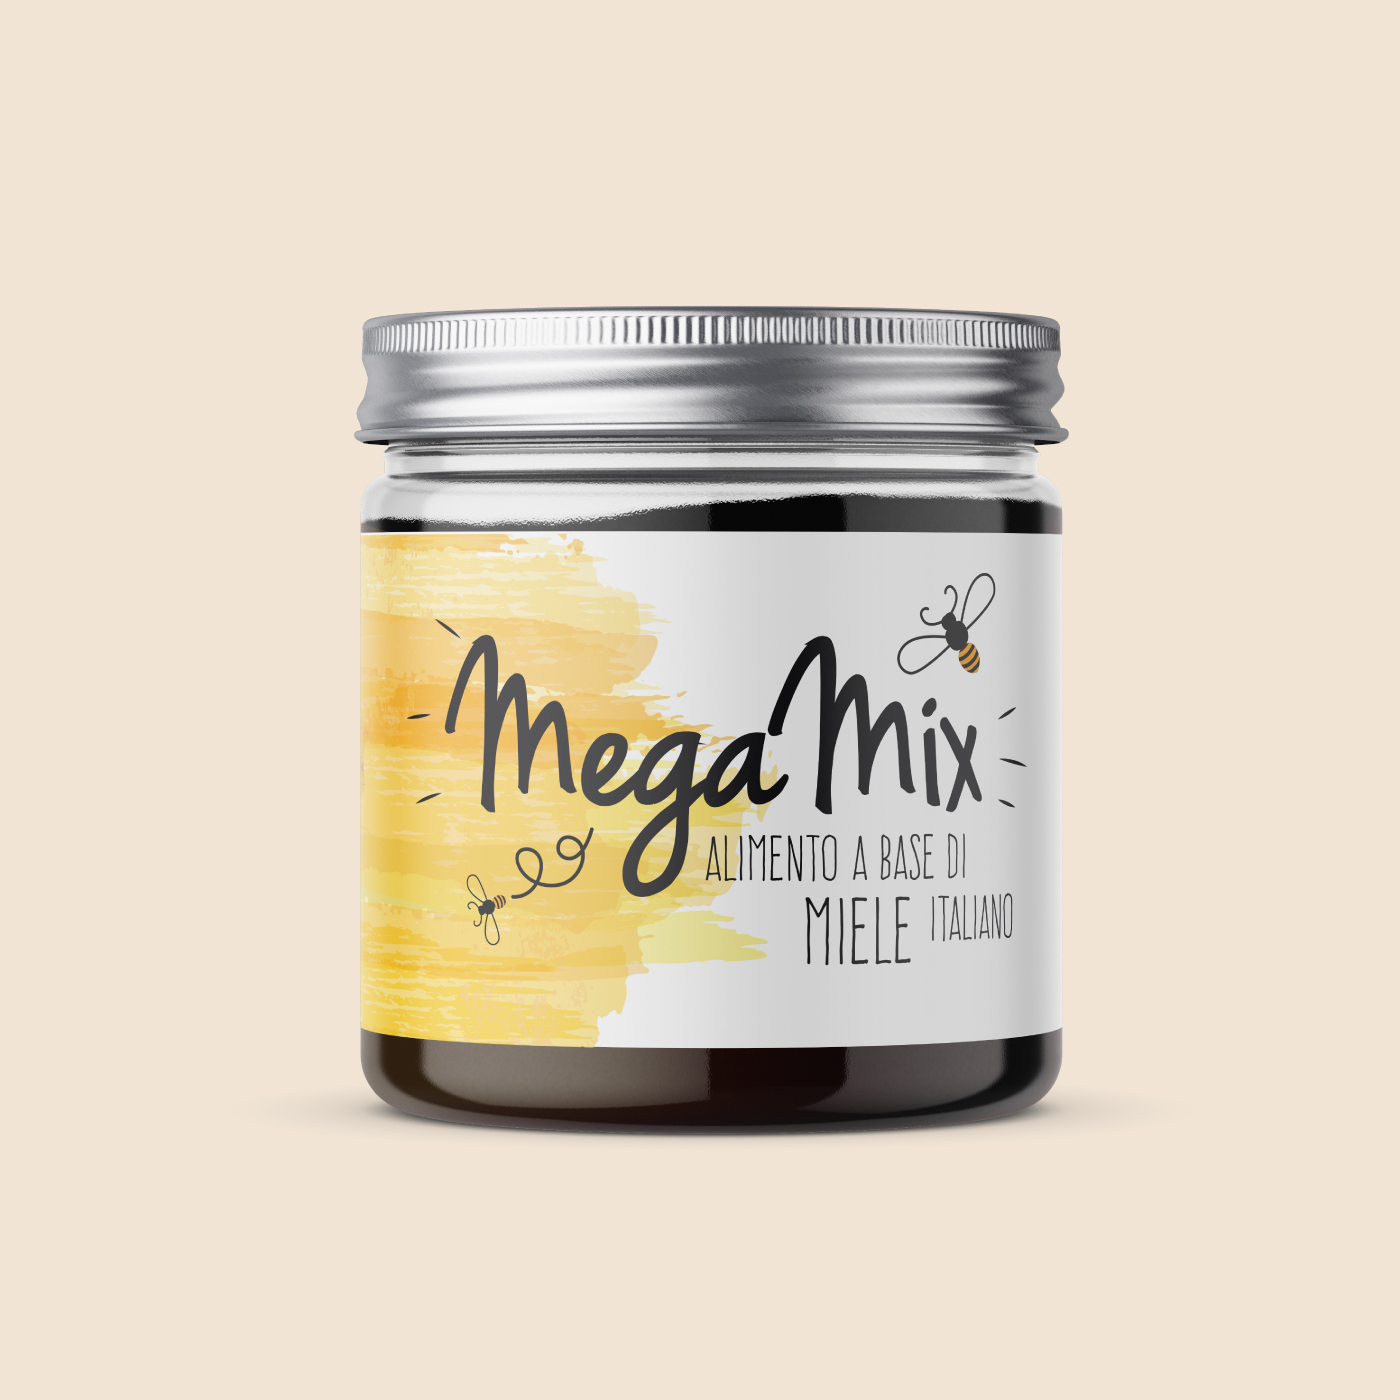 Megamix - Alimento a base di miele Italiano